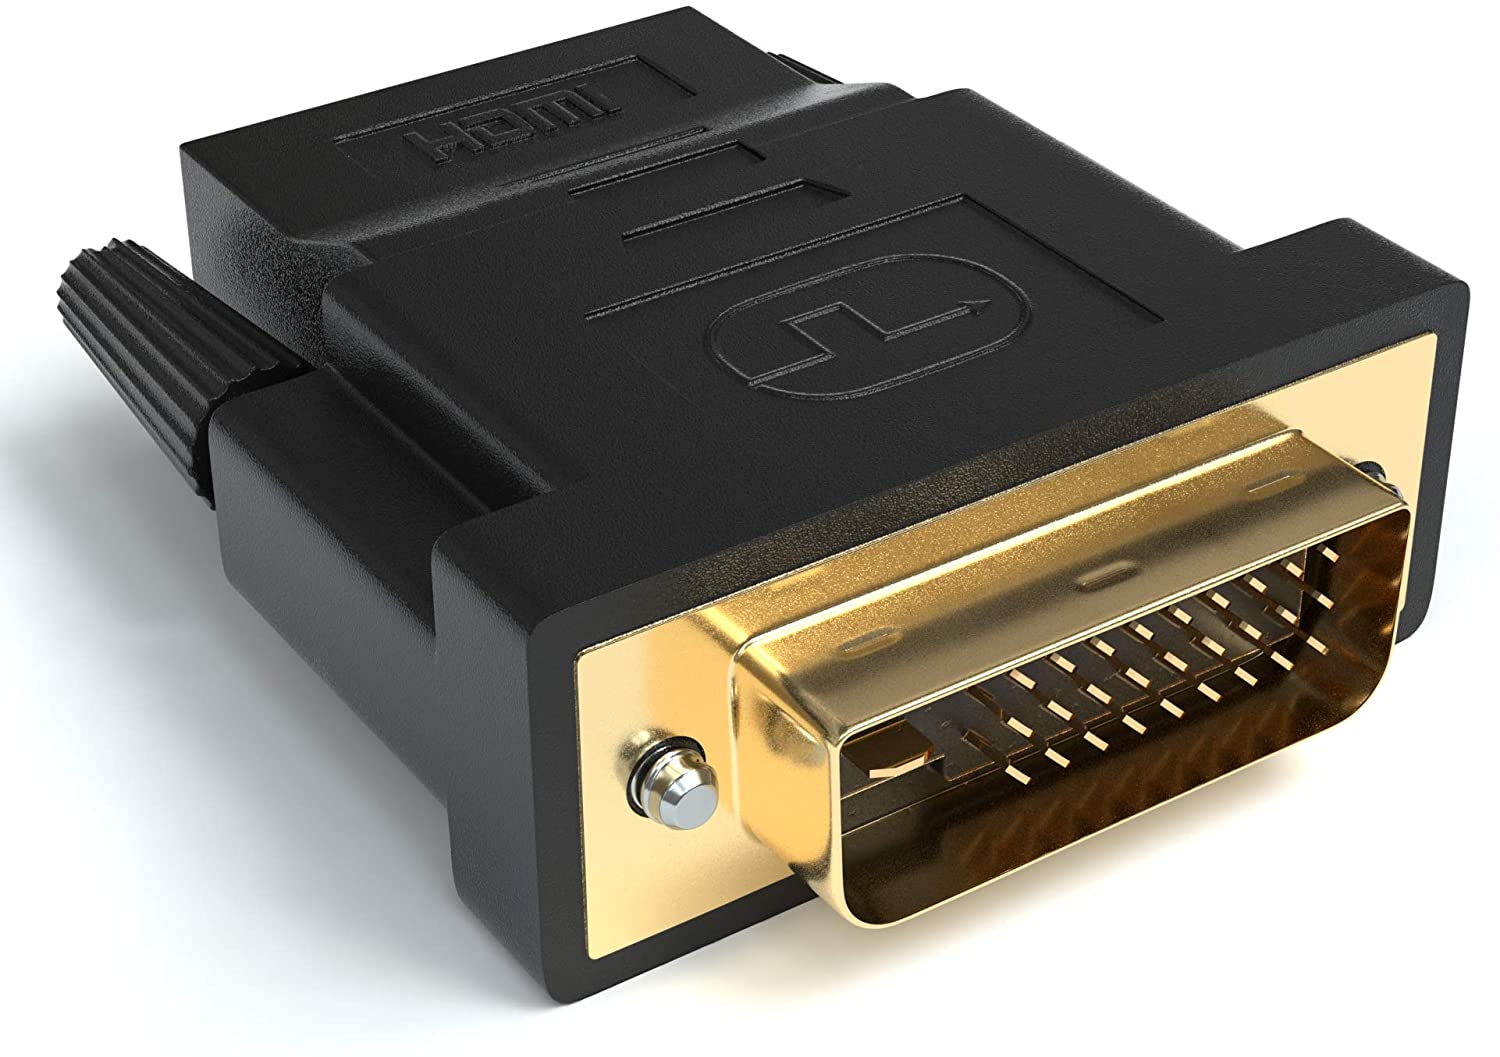 HDMI auf DVI Adapter - HDMI A Buchse zu DVI Stecker | 24+1 Kontakte vergoldet